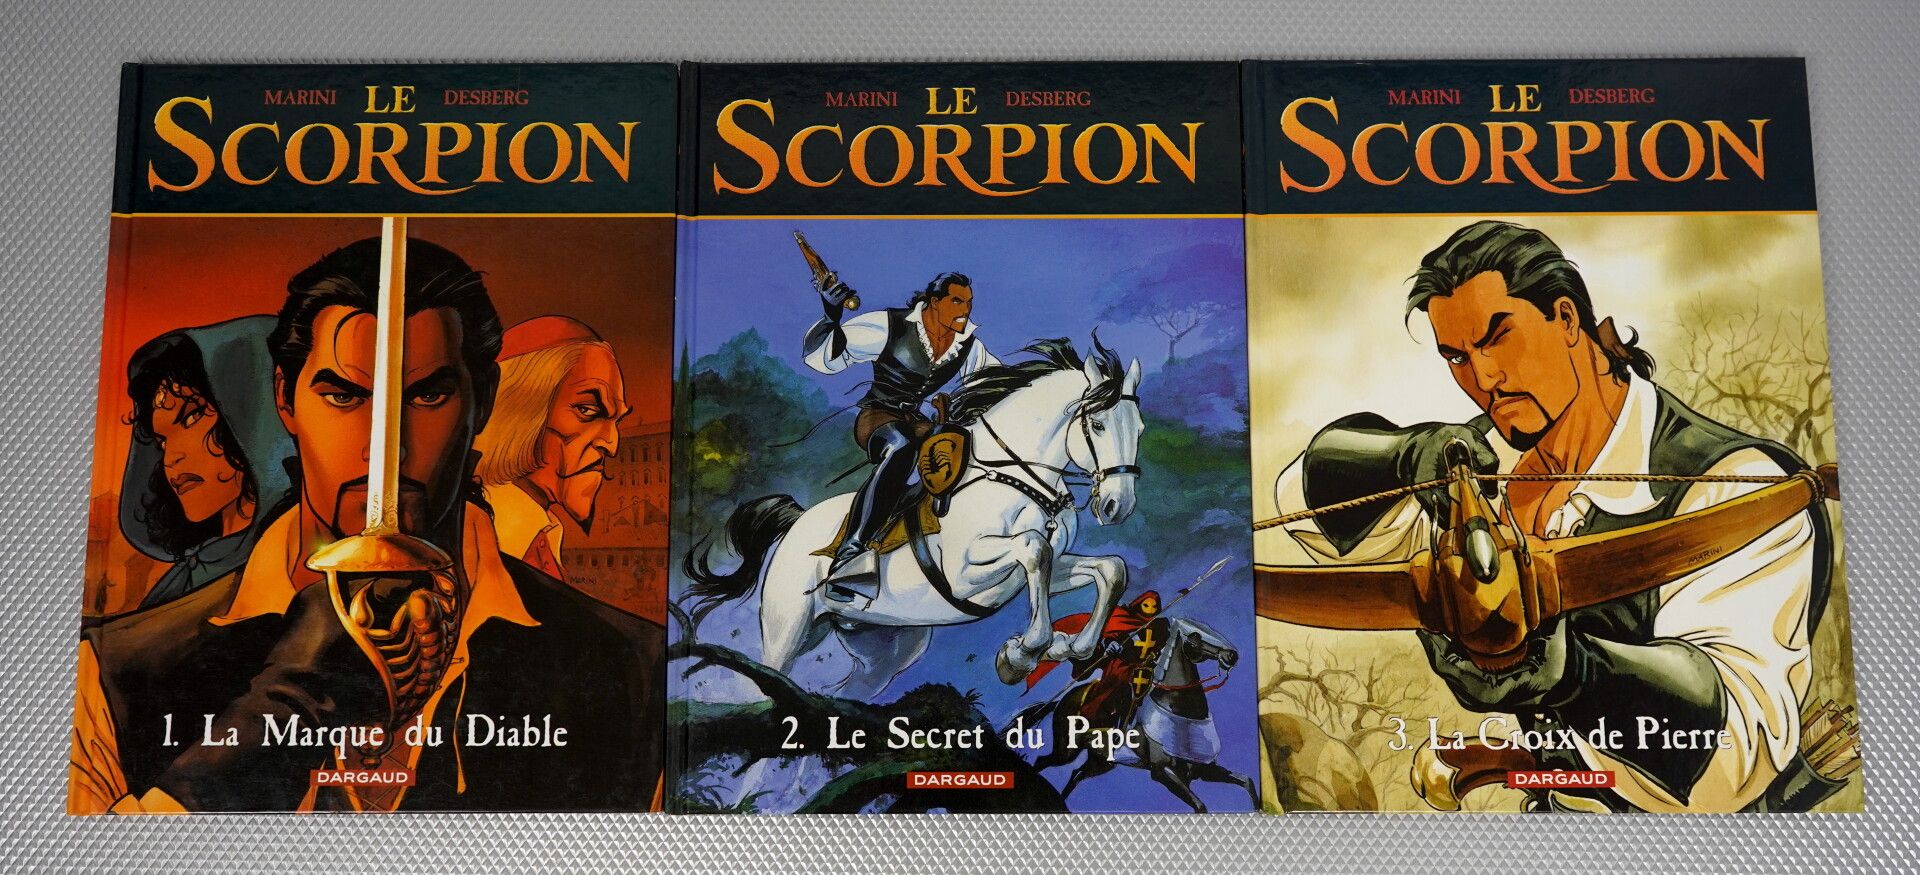 Null Le Scorpion (Marini y Desberg). 13 álbumes.



Los 13 volúmenes de la saga,&hellip;